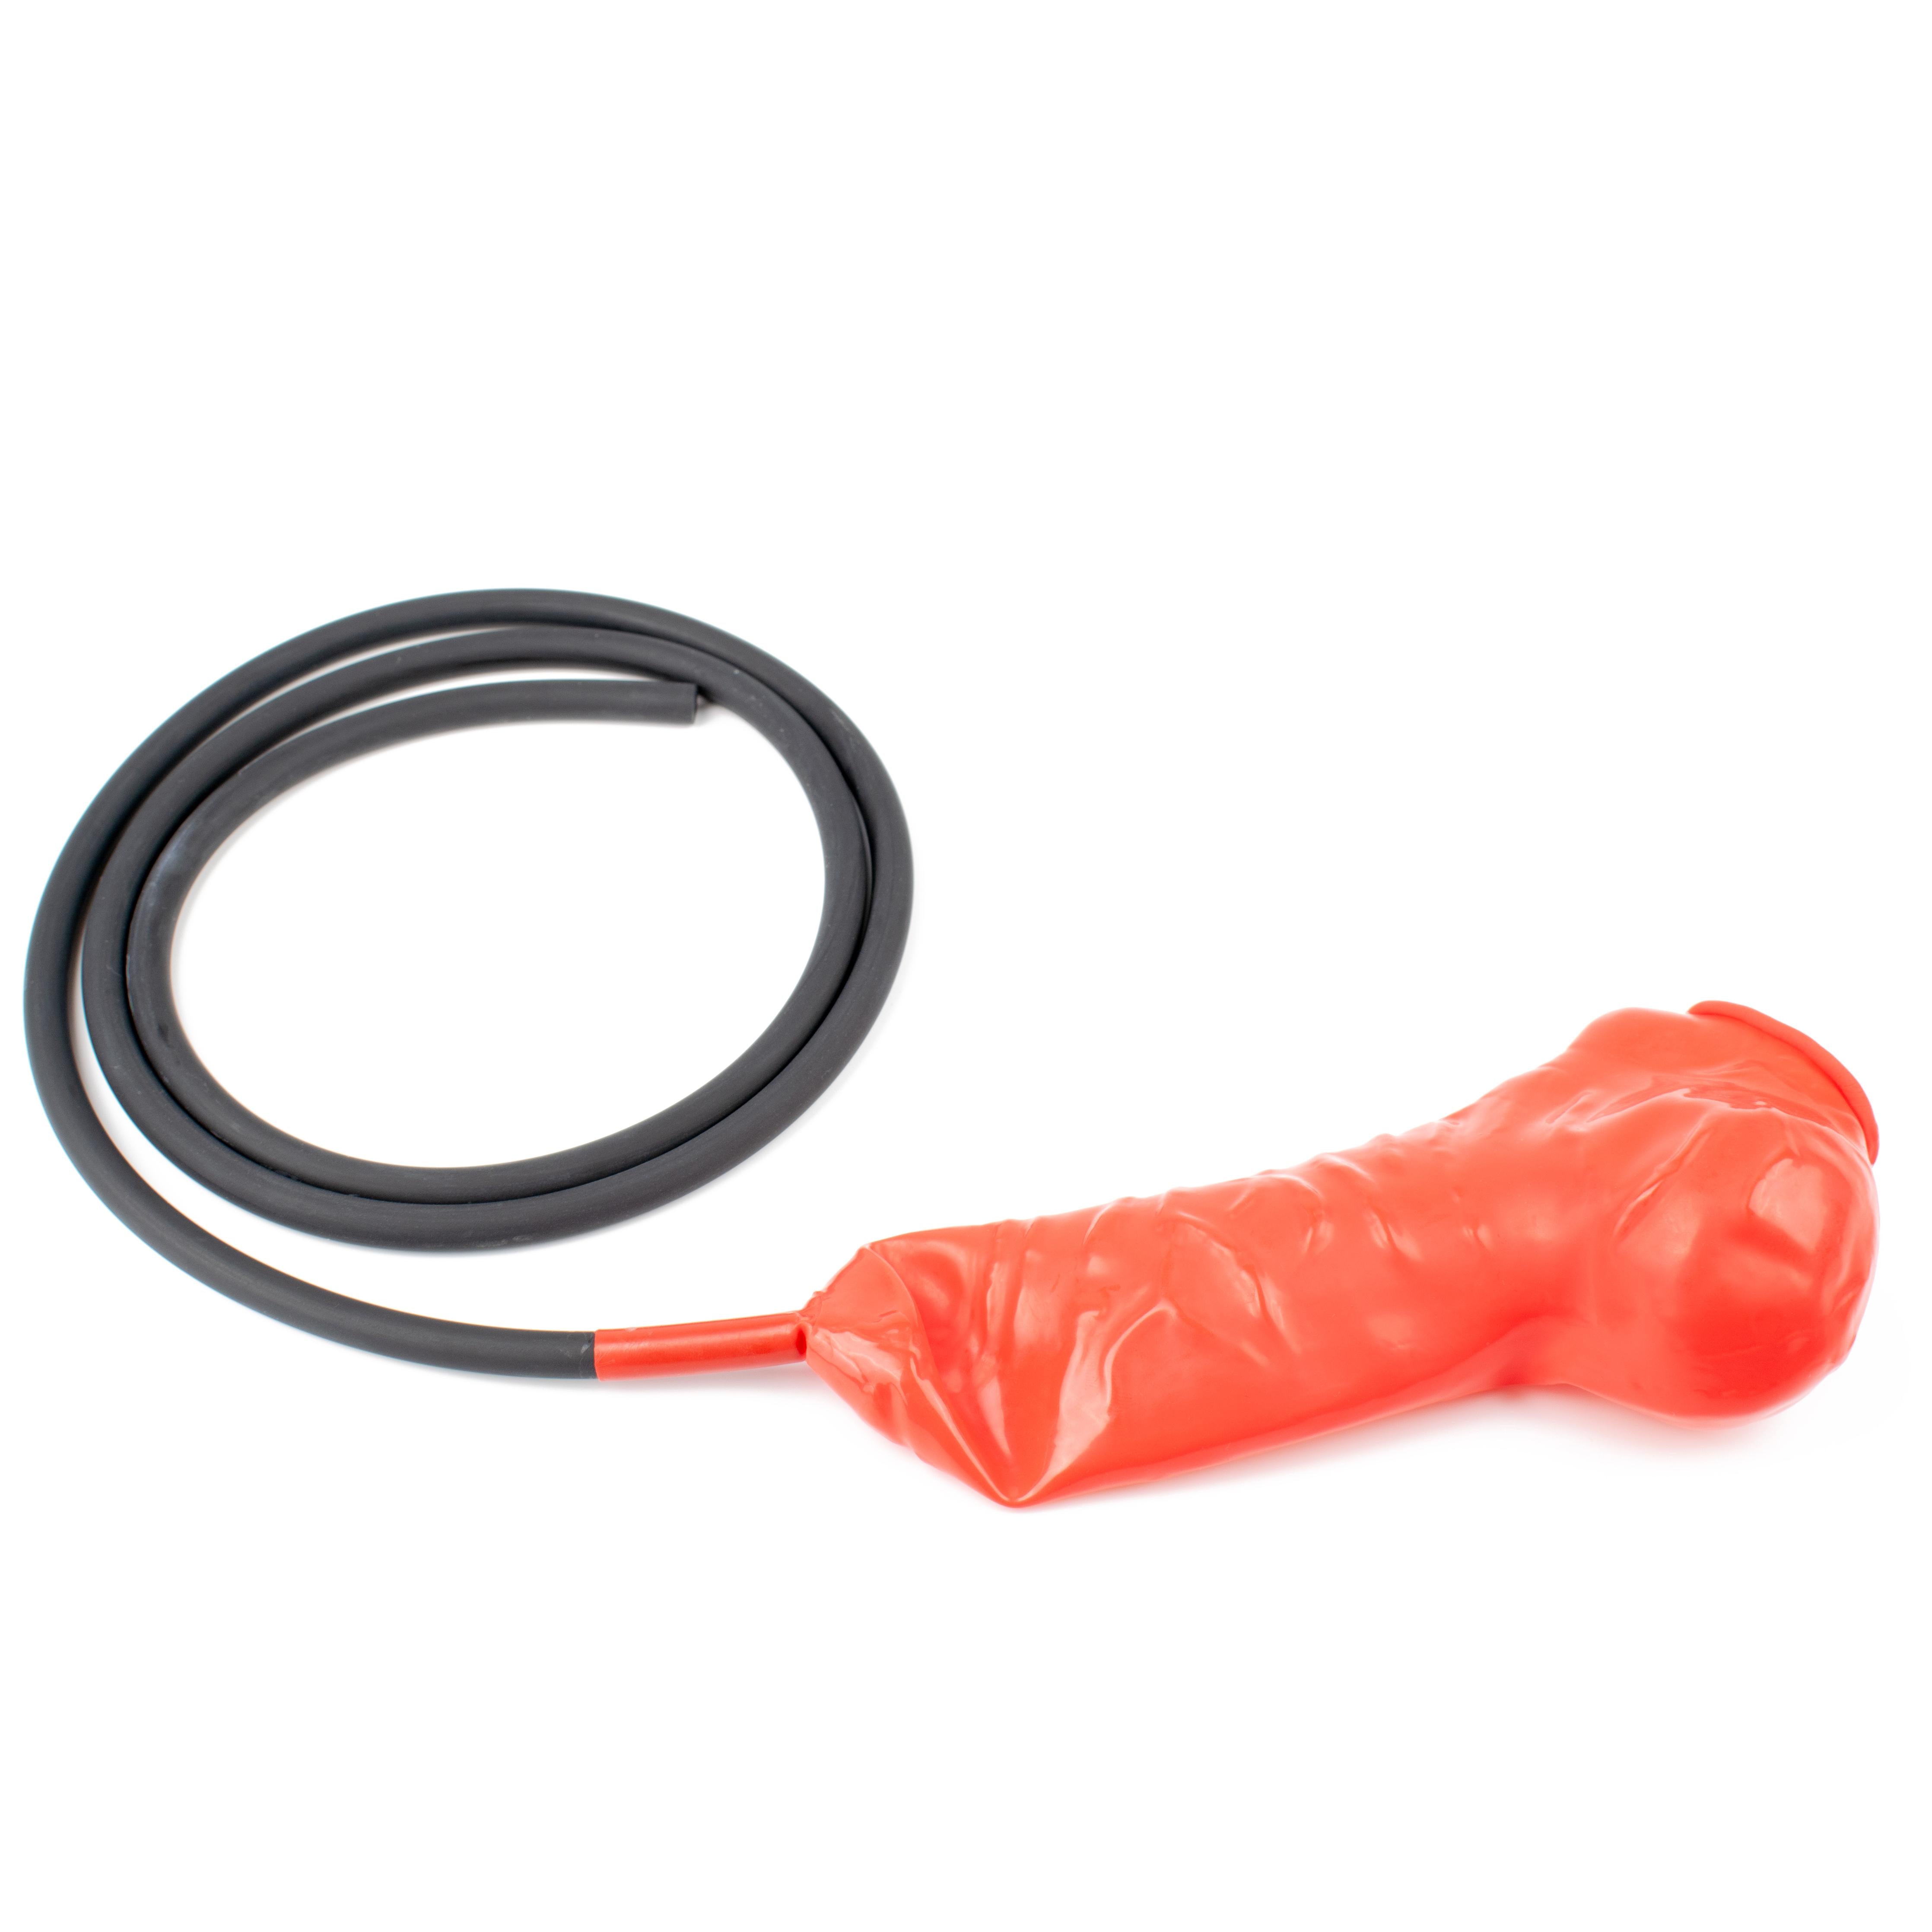 Rubberfashion Latex Pennishülle - Latex Pennis Hülle mit Hodensack - Condom realistisch + 120 cm Schlauch für Herren 17 cm